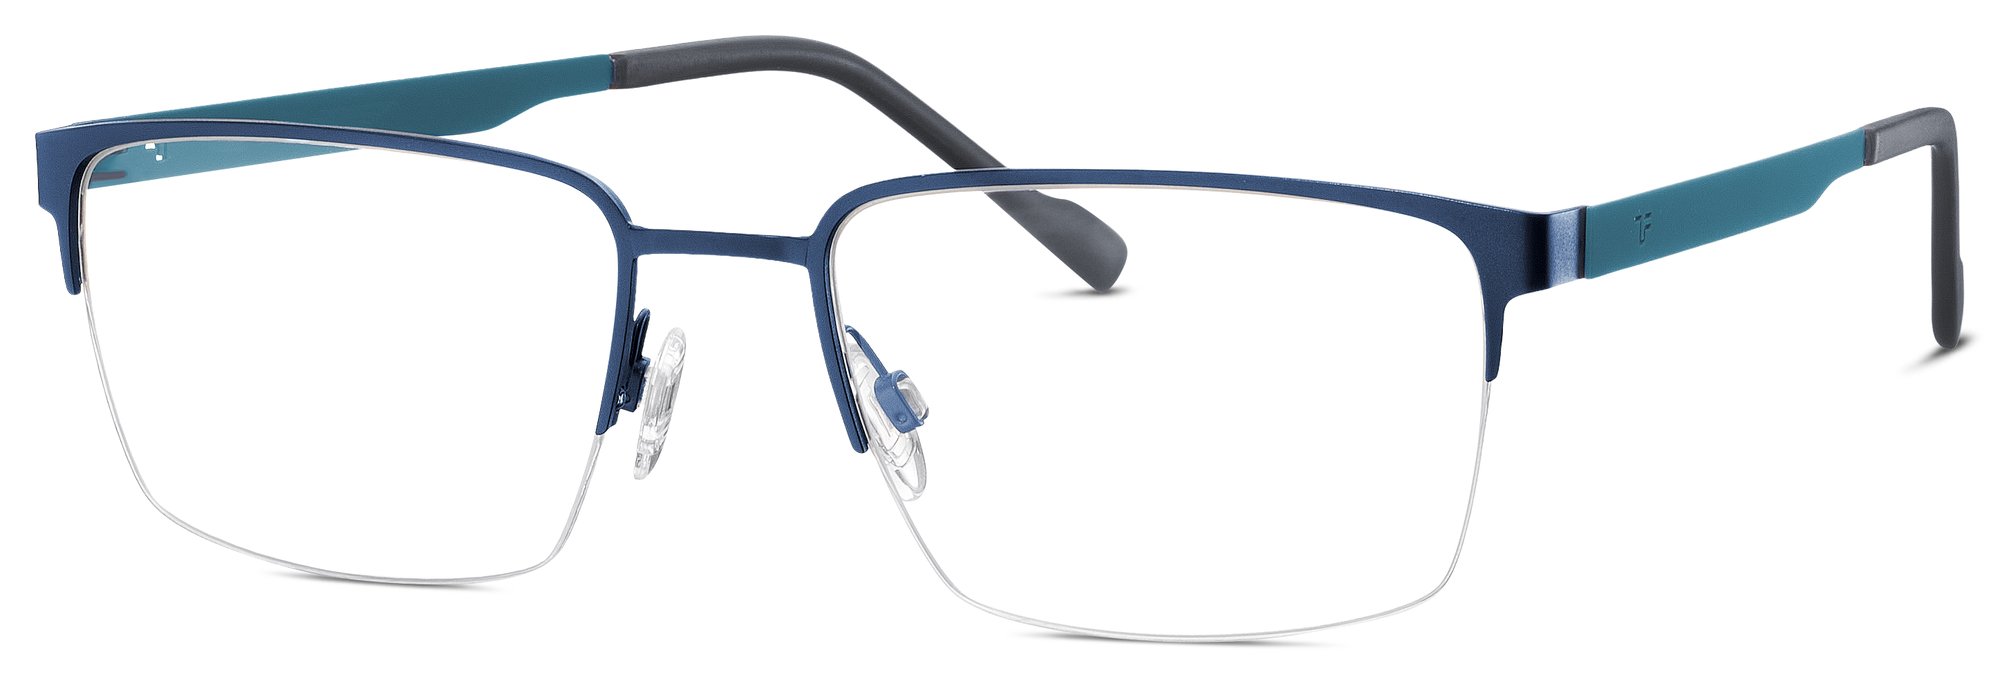 Das Bild zeigt die Korrektionsbrille 820883 70 von der Marke Titanflex in blau.